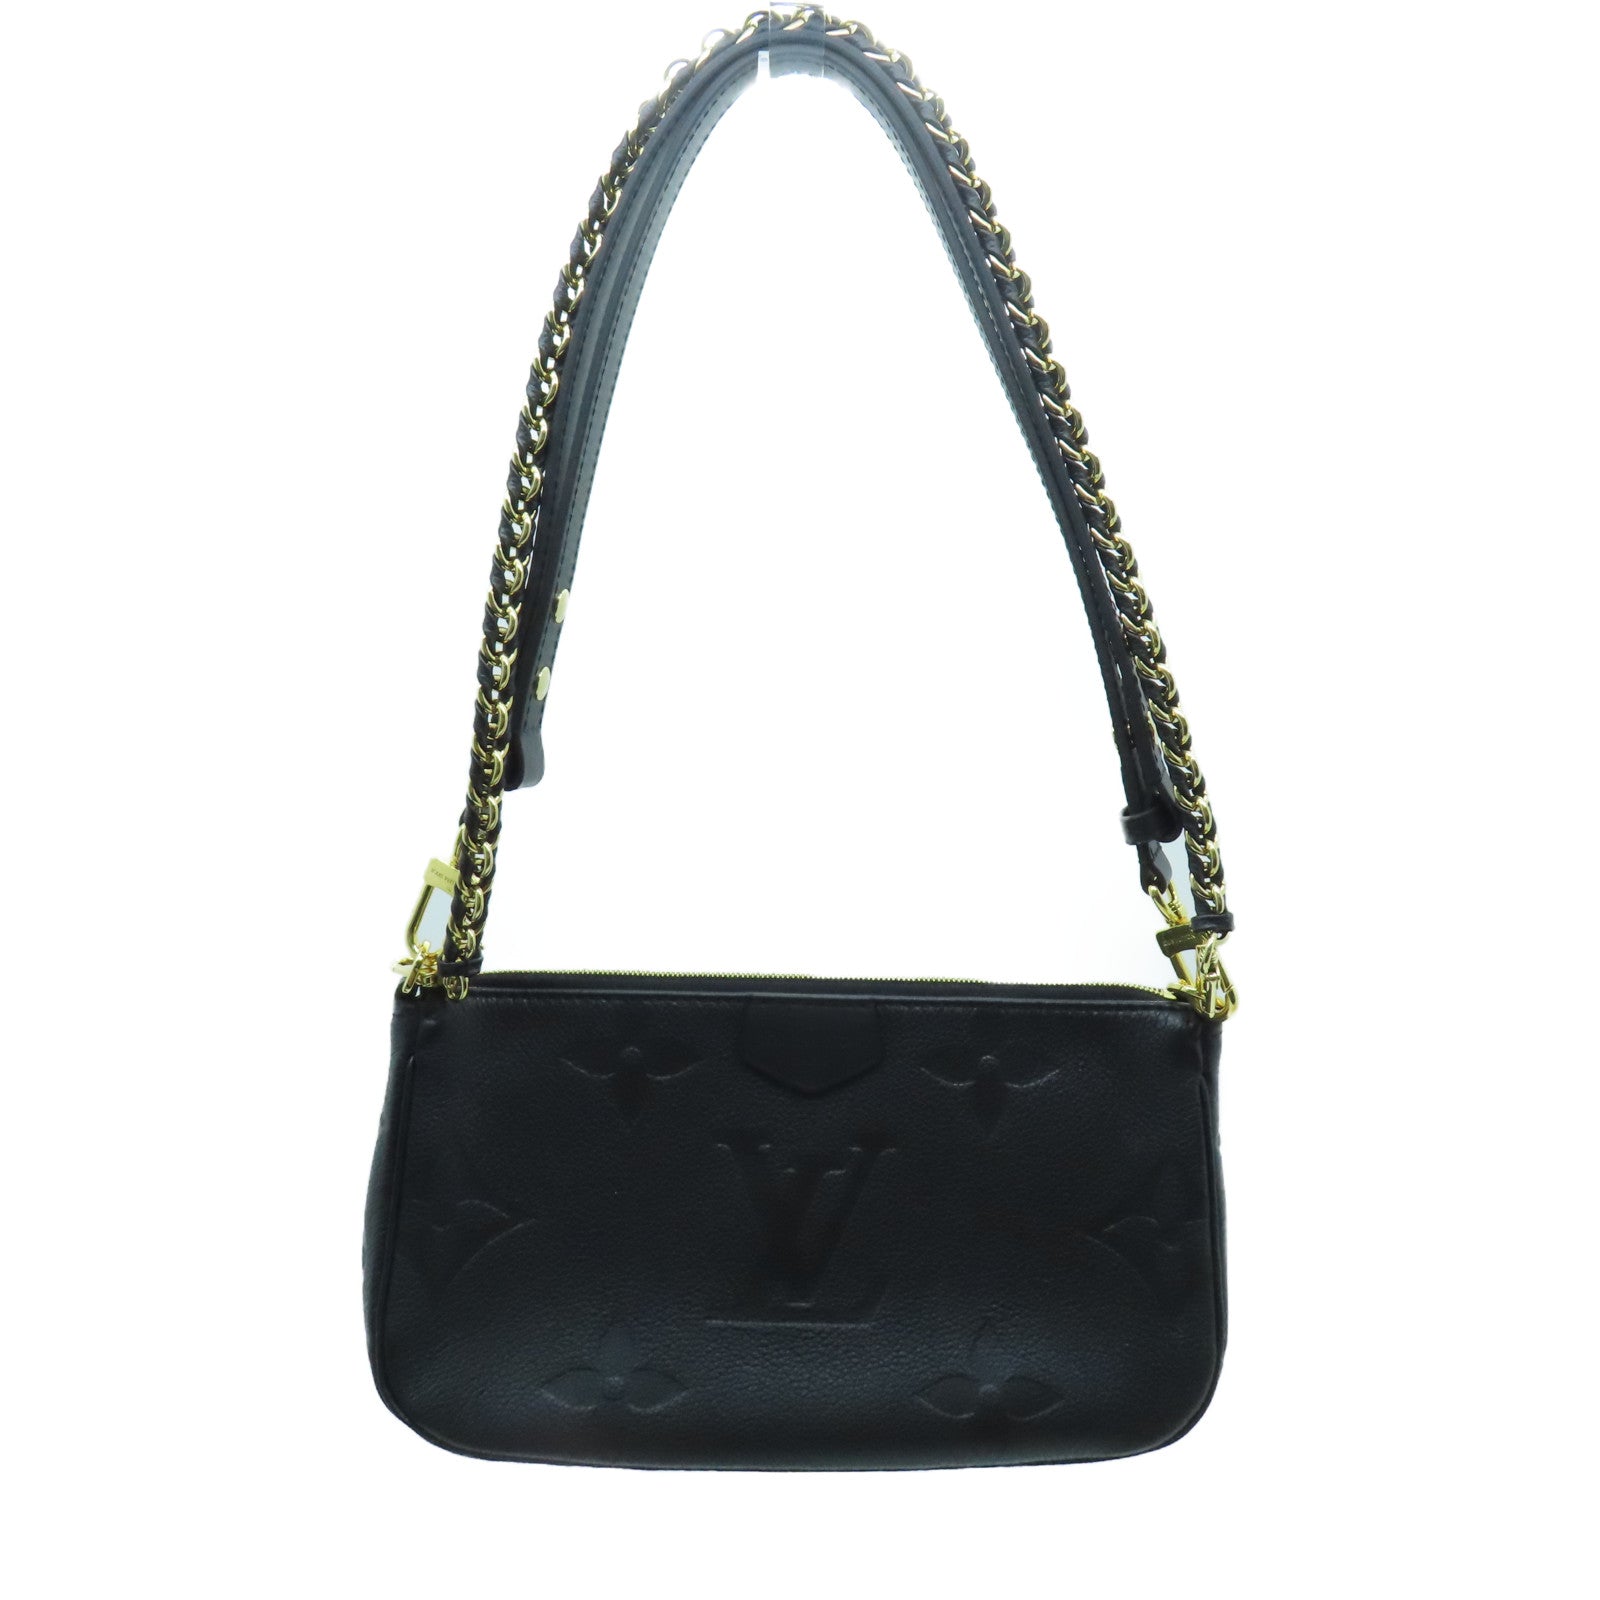 Louis Vuitton Multi Pochette Accessoire Monogram Empreinte Shoulder Bag  M80399